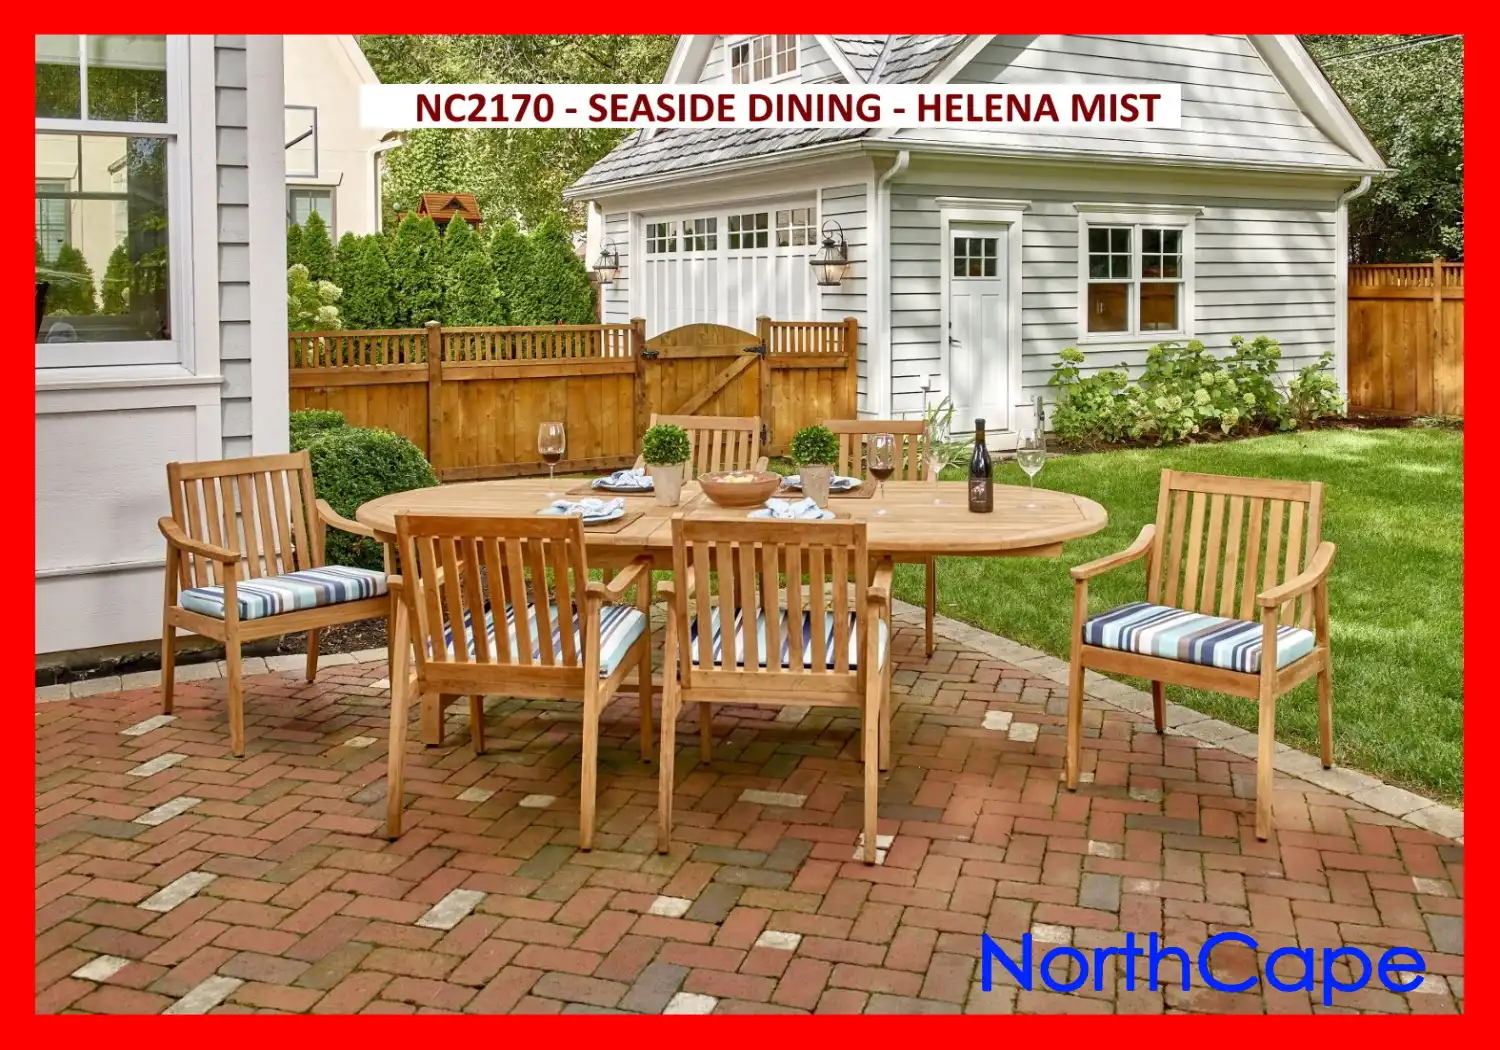 NC2170 - SEASIDE DINING - HELENA MIST